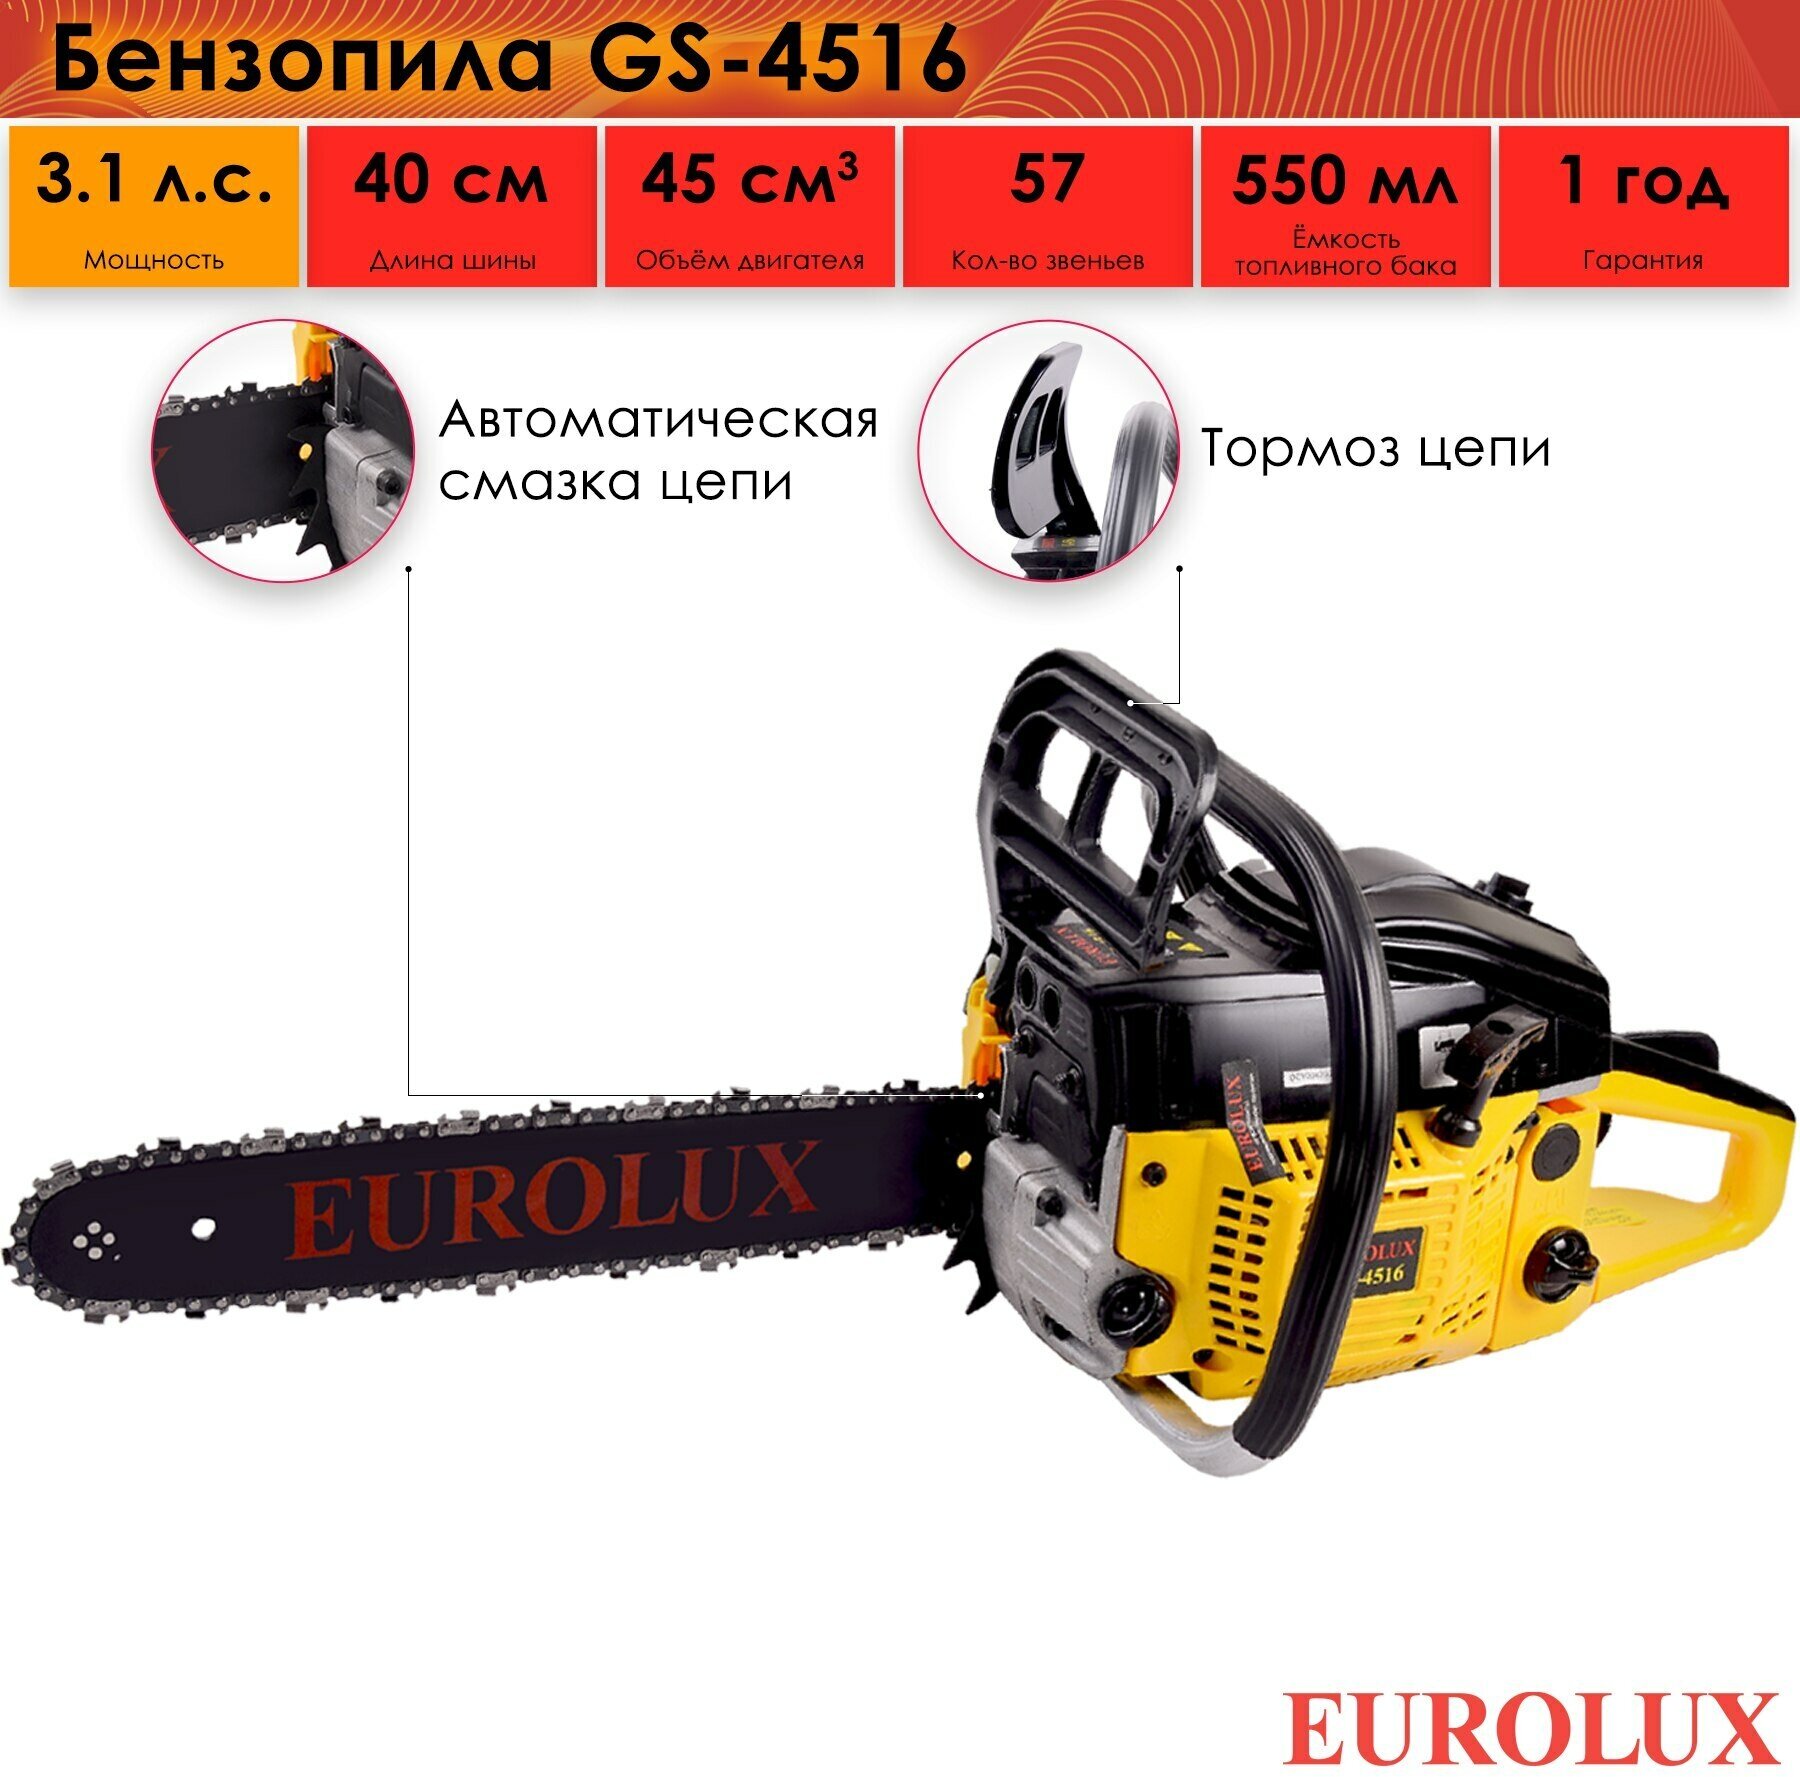 Бензопила Eurolux GS-4516, 2300 Вт, 45 см3, 3.1 л. с, 0.55 л, 3/8", 57 звеньев цепи, двухтактный двигатель